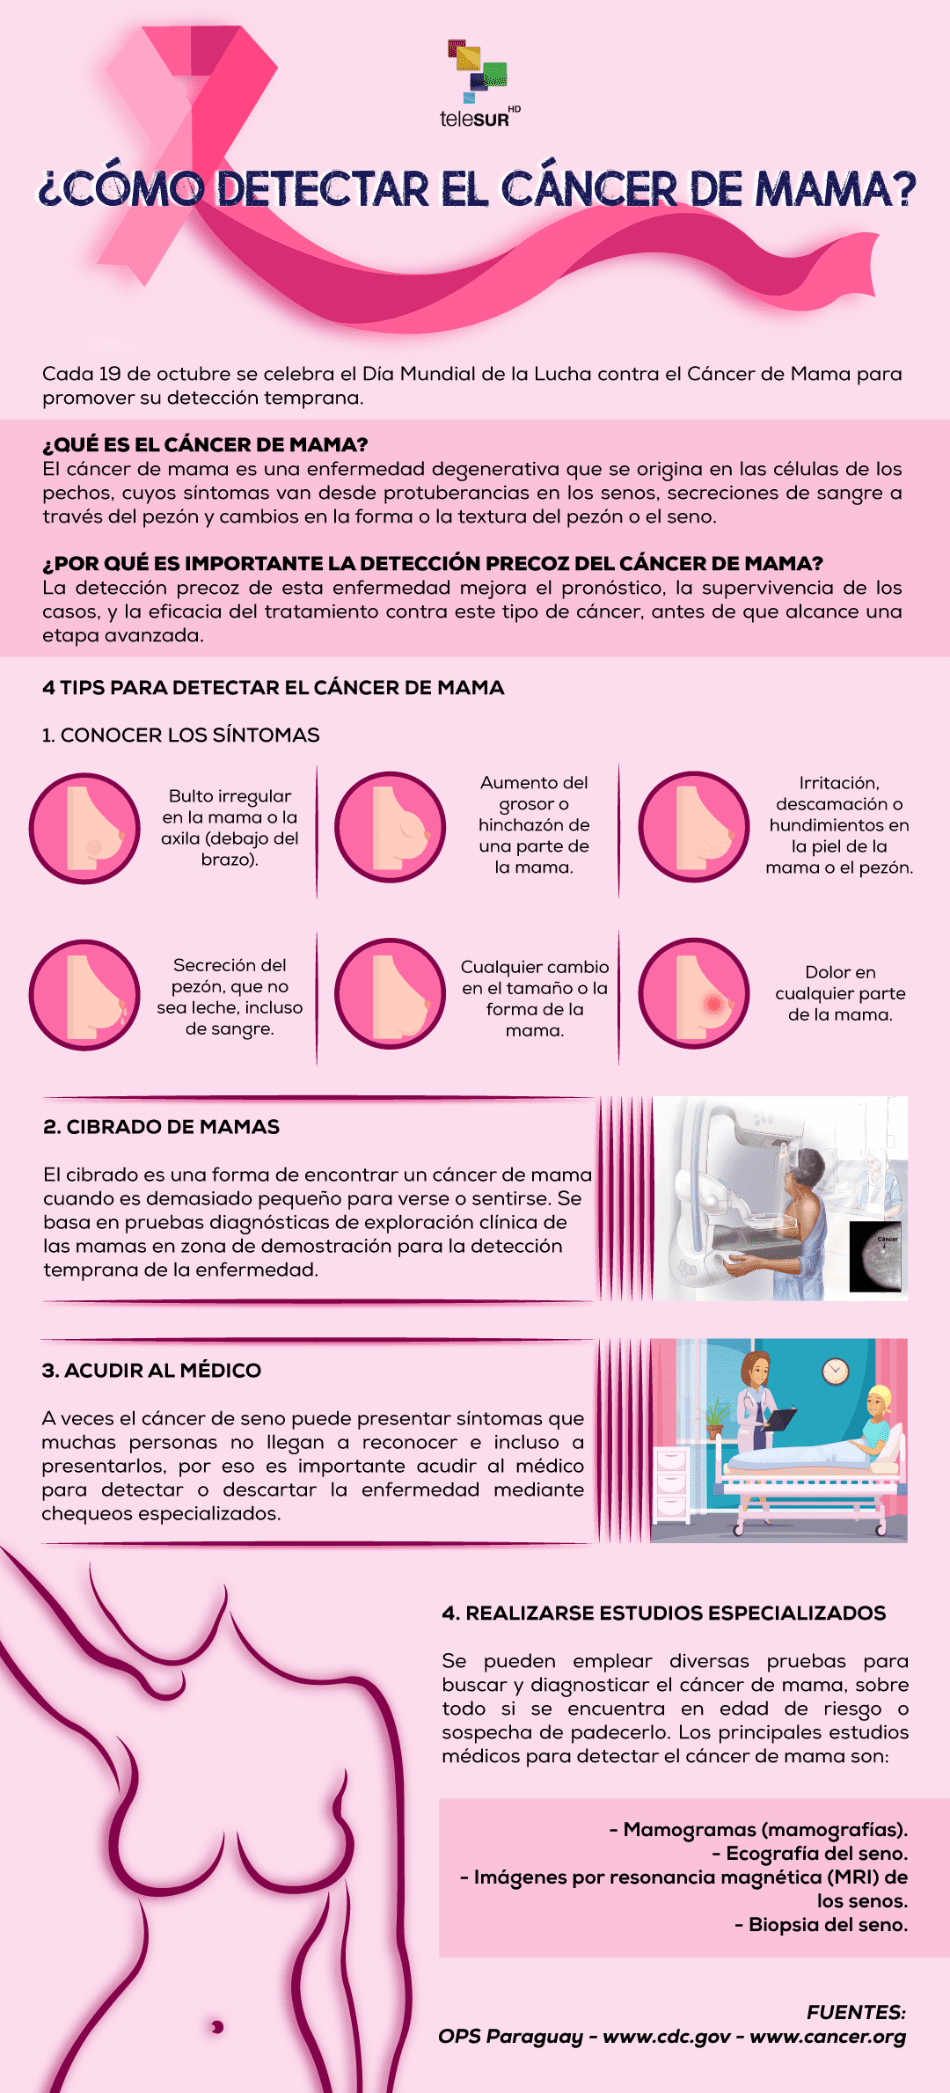 ¿Cómo detectar el cáncer de mama?